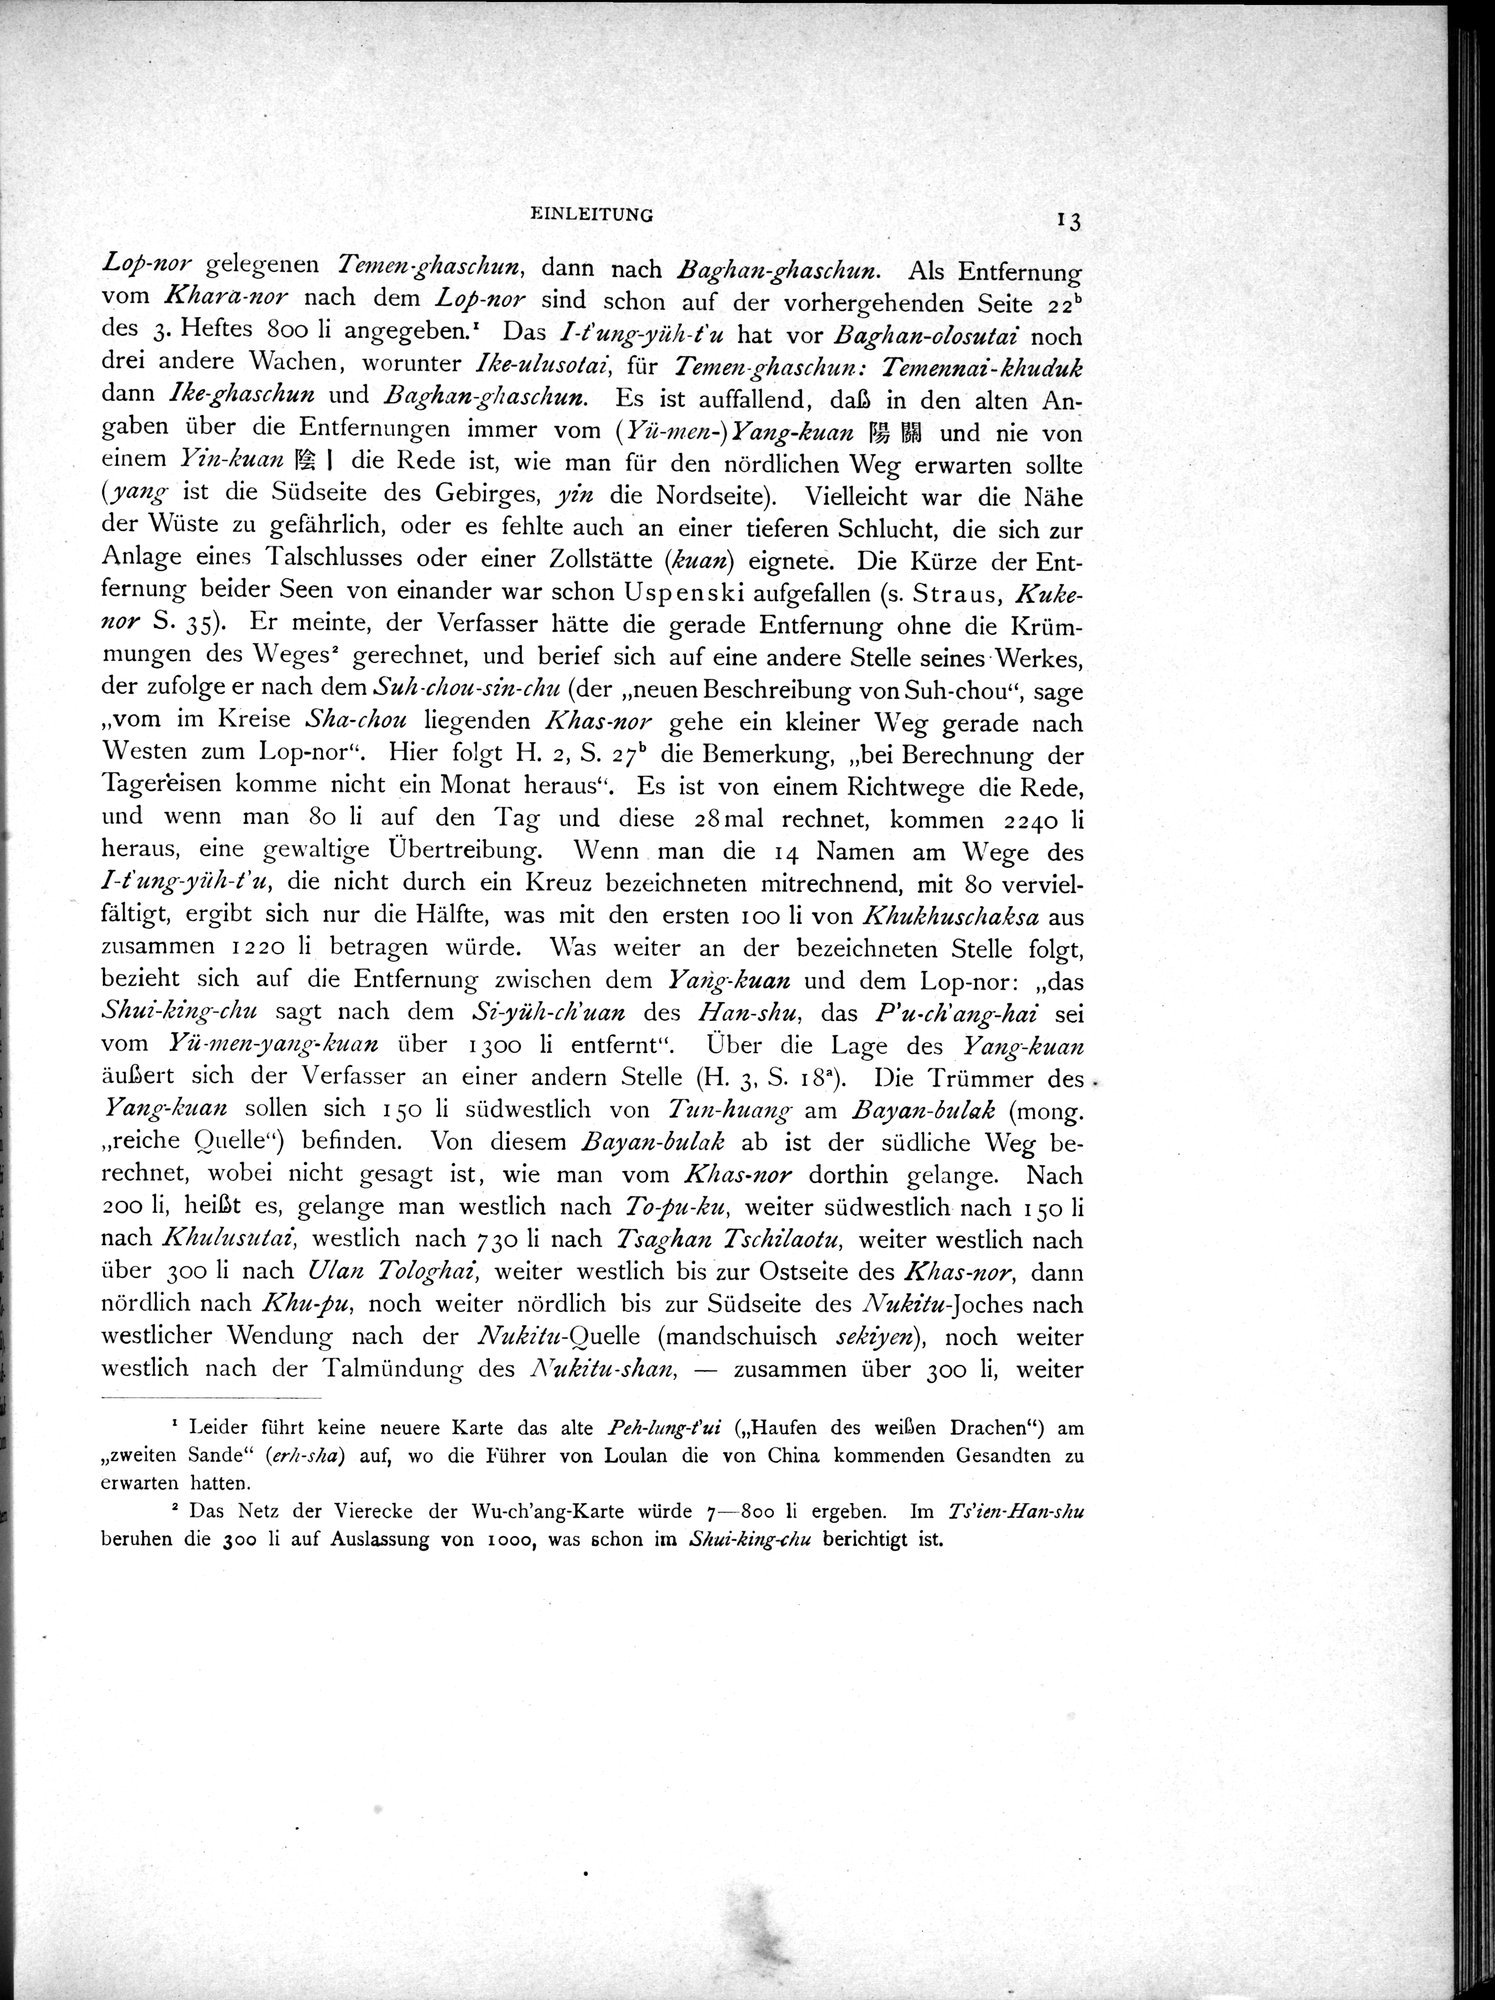 Die Chinesischen Handschriften- und sonstigen Kleinfunde Sven Hedins in Lou-lan : vol.1 / Page 37 (Grayscale High Resolution Image)